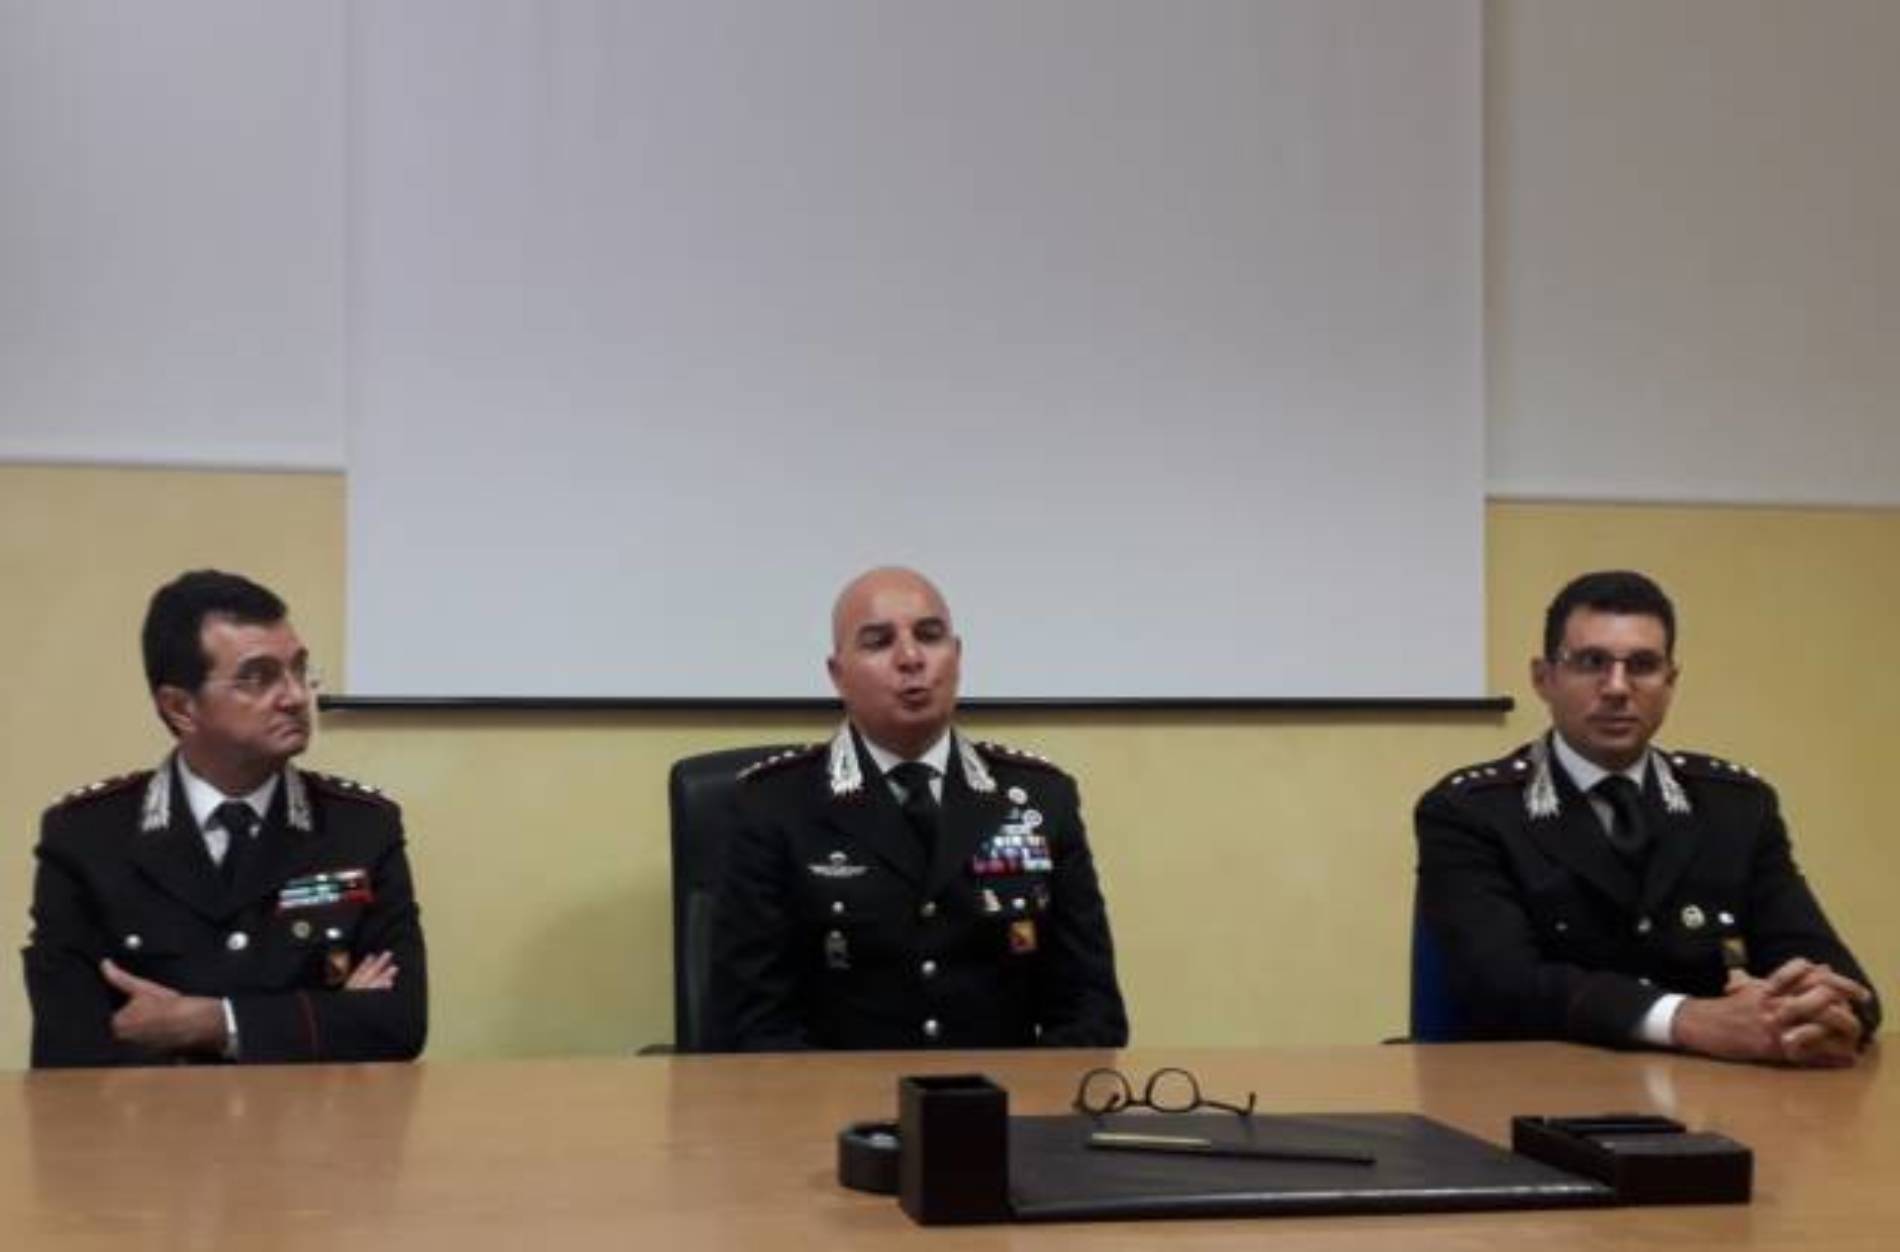 ENNA. Carabinieri in provincia di Enna. Presentati i nuovi ufficiali.